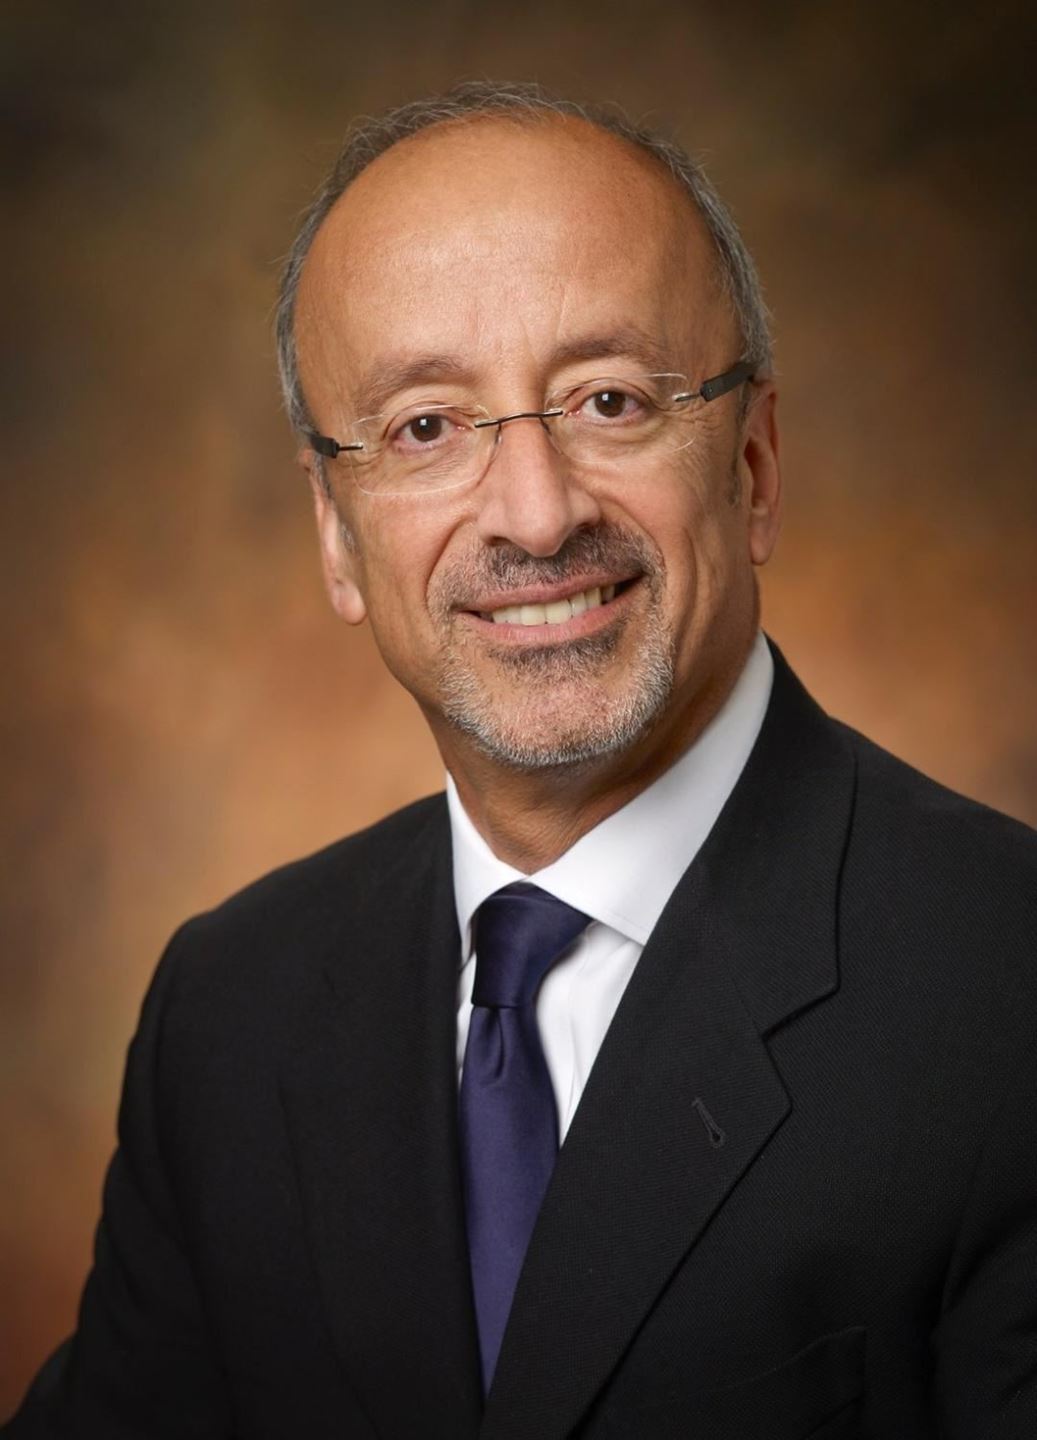 سمير خليل، المدير التنفيذي لمنظمة PhRMA في الشرق الأوسط وأفريقيا